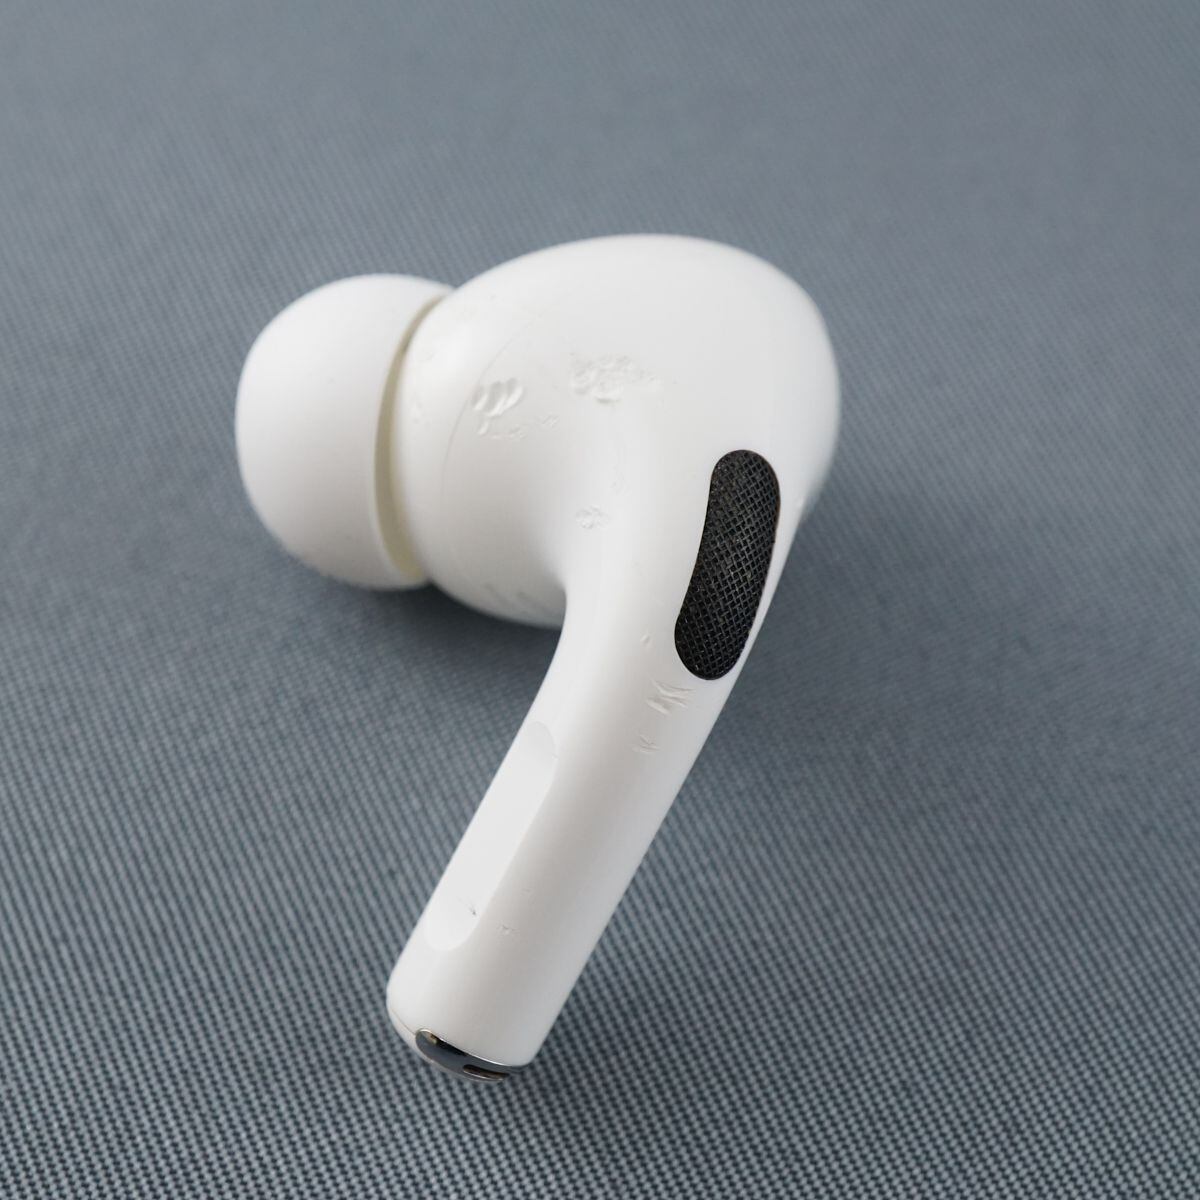 Apple純正ワイヤレスイヤホンAirPods第2世代 左耳用 美品